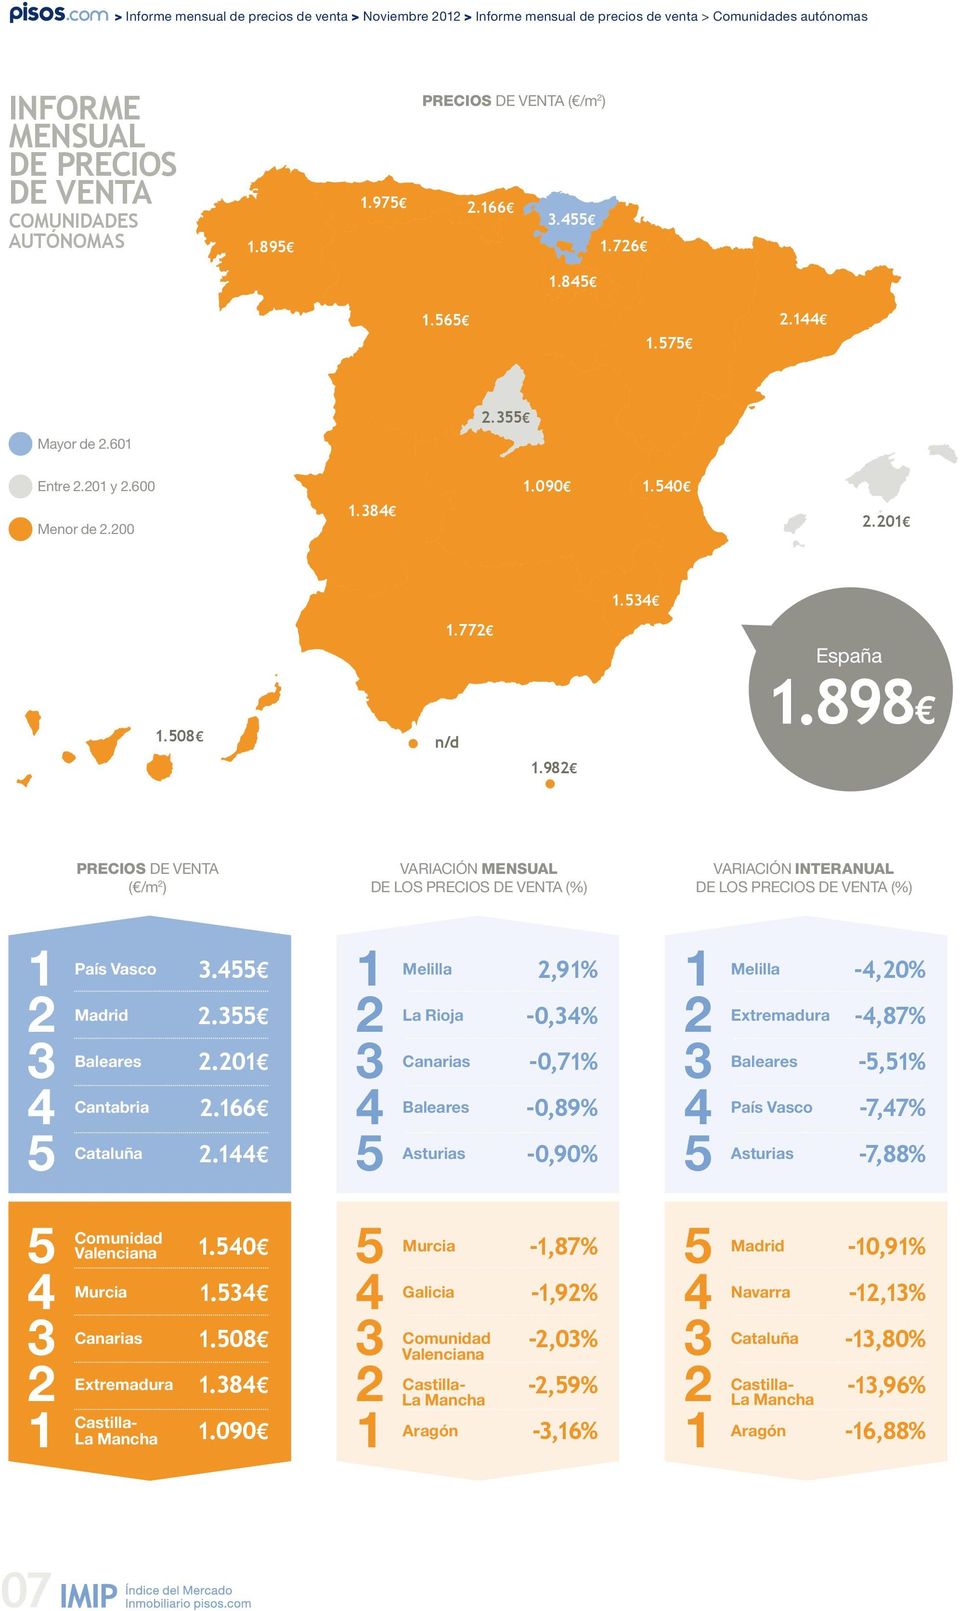 98 Precios de venta ( /m ) Variación mensual de los precios de venta (%) Variación interanual de los precios de venta (%) País Vasco Baleares Cantabria Cataluña...0.66.